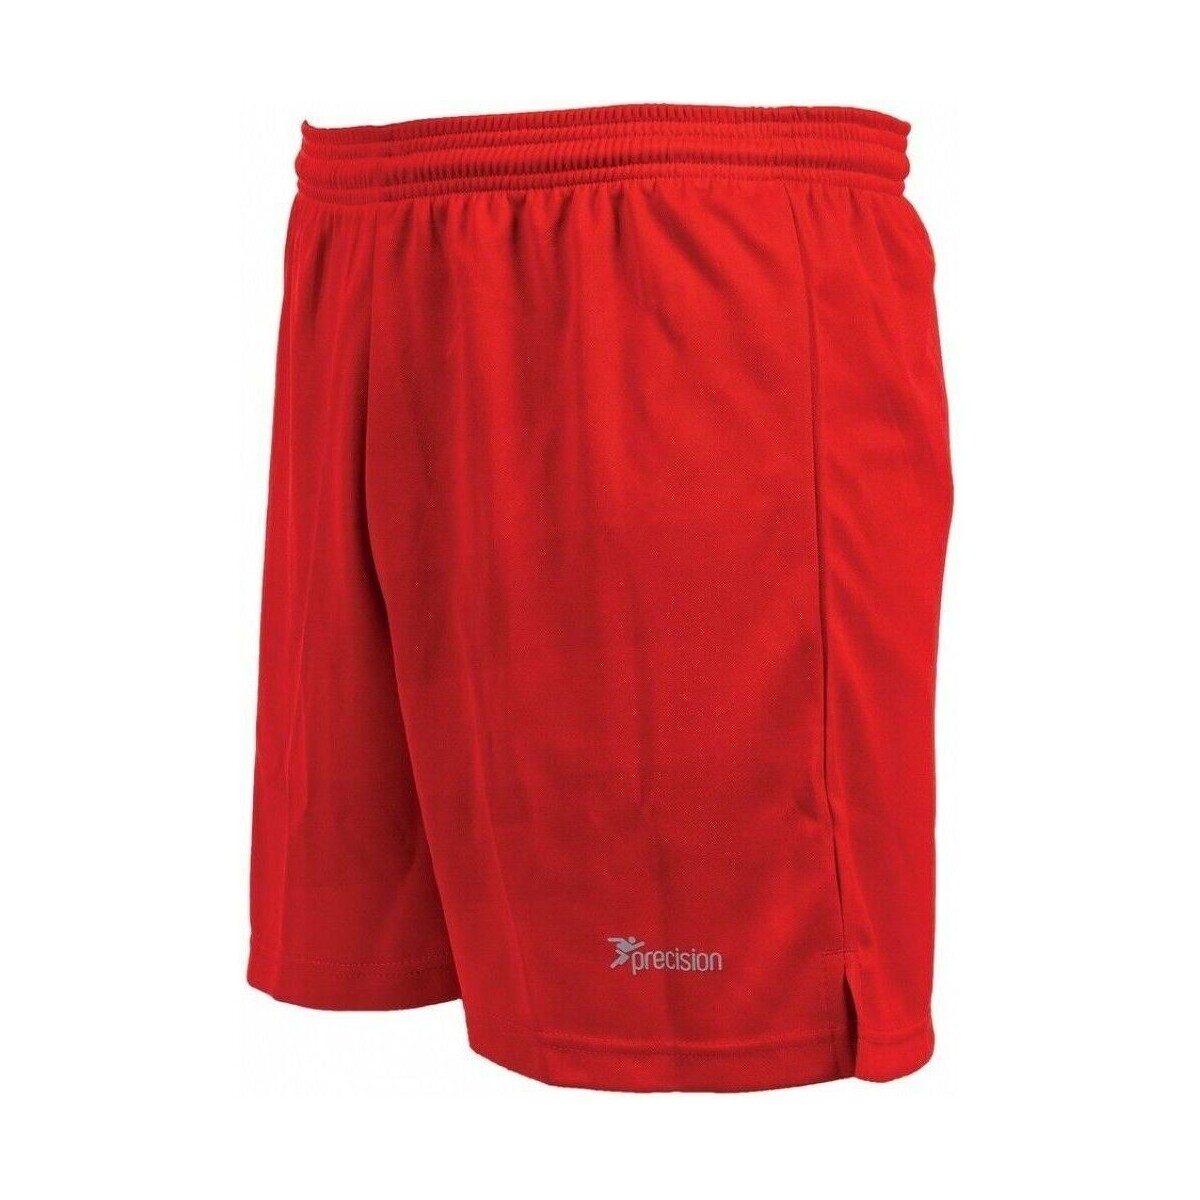 textil Shorts / Bermudas Precision Madrid Rojo